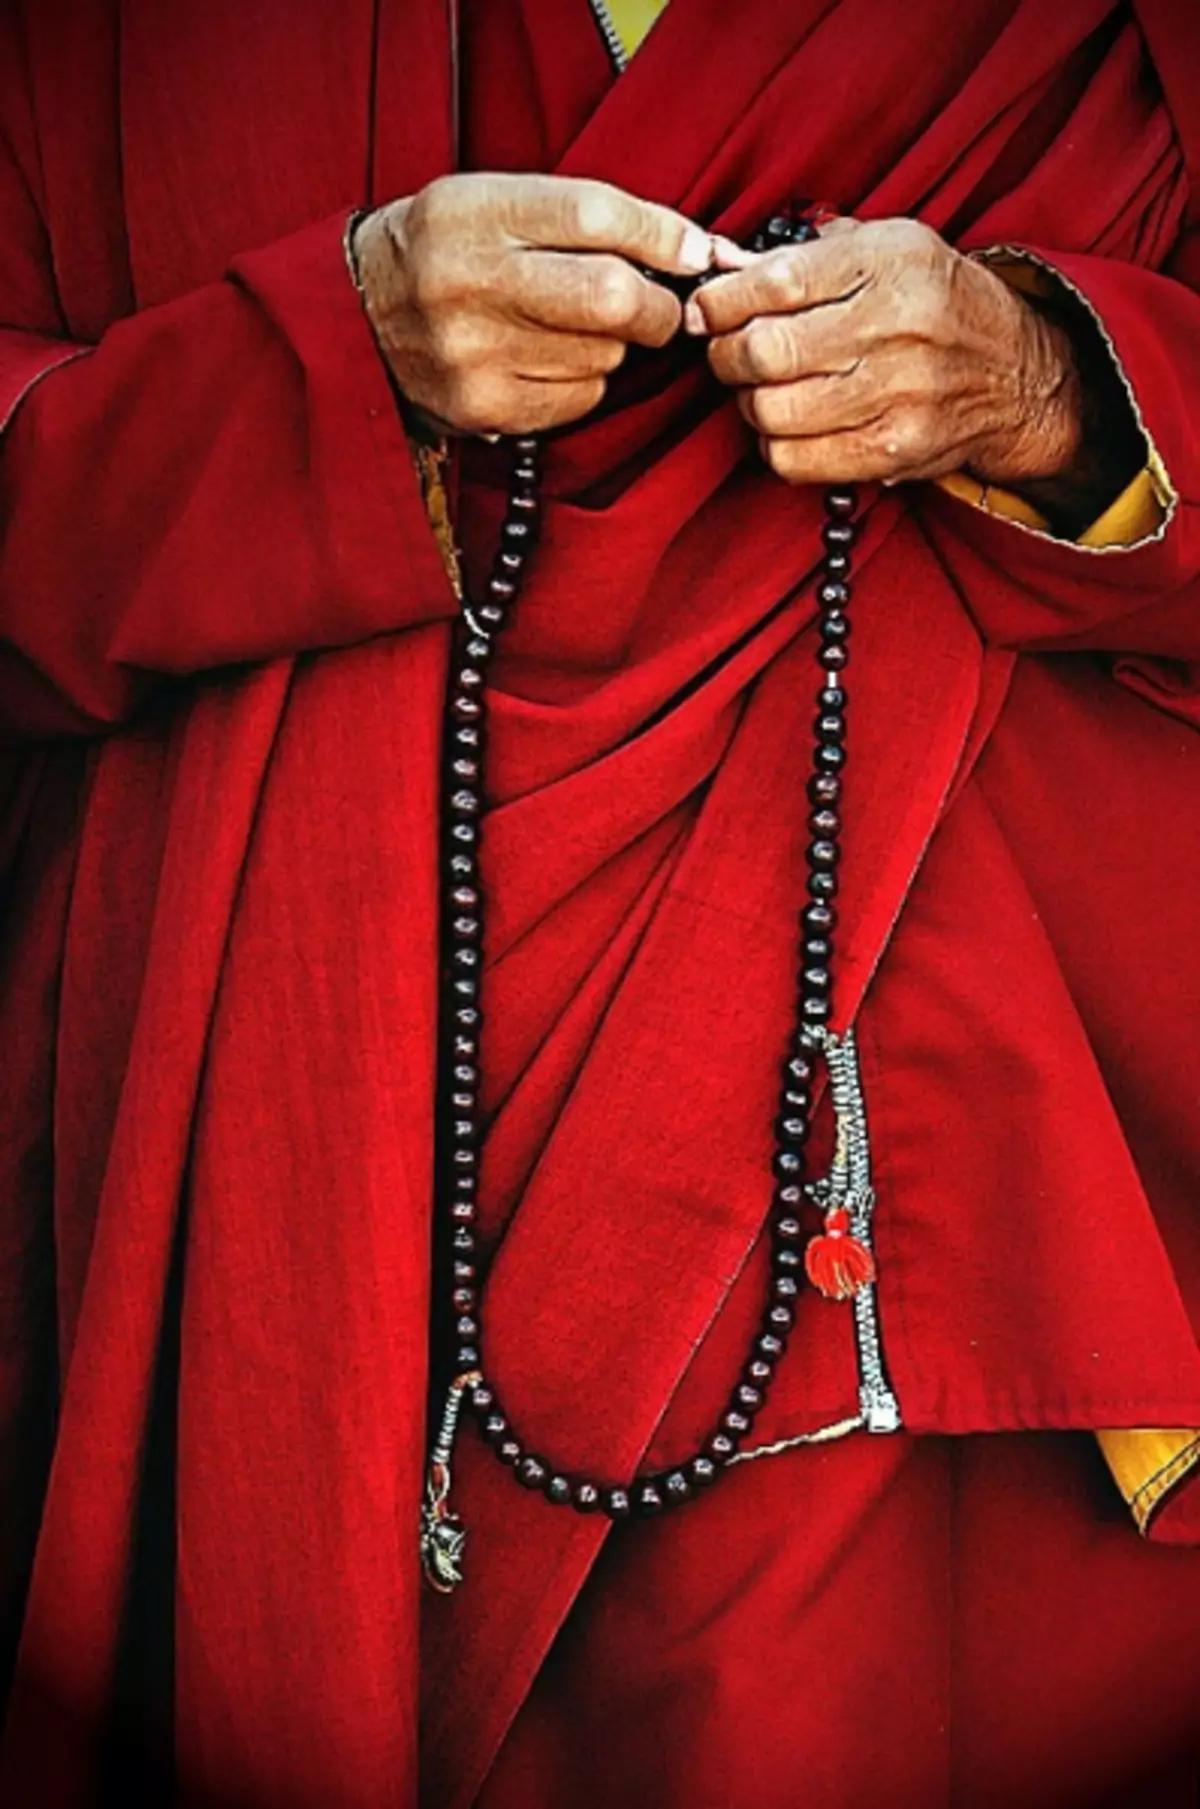 Buddhist rosary zviite iwe pachako pane photos uye mavhidhiyo